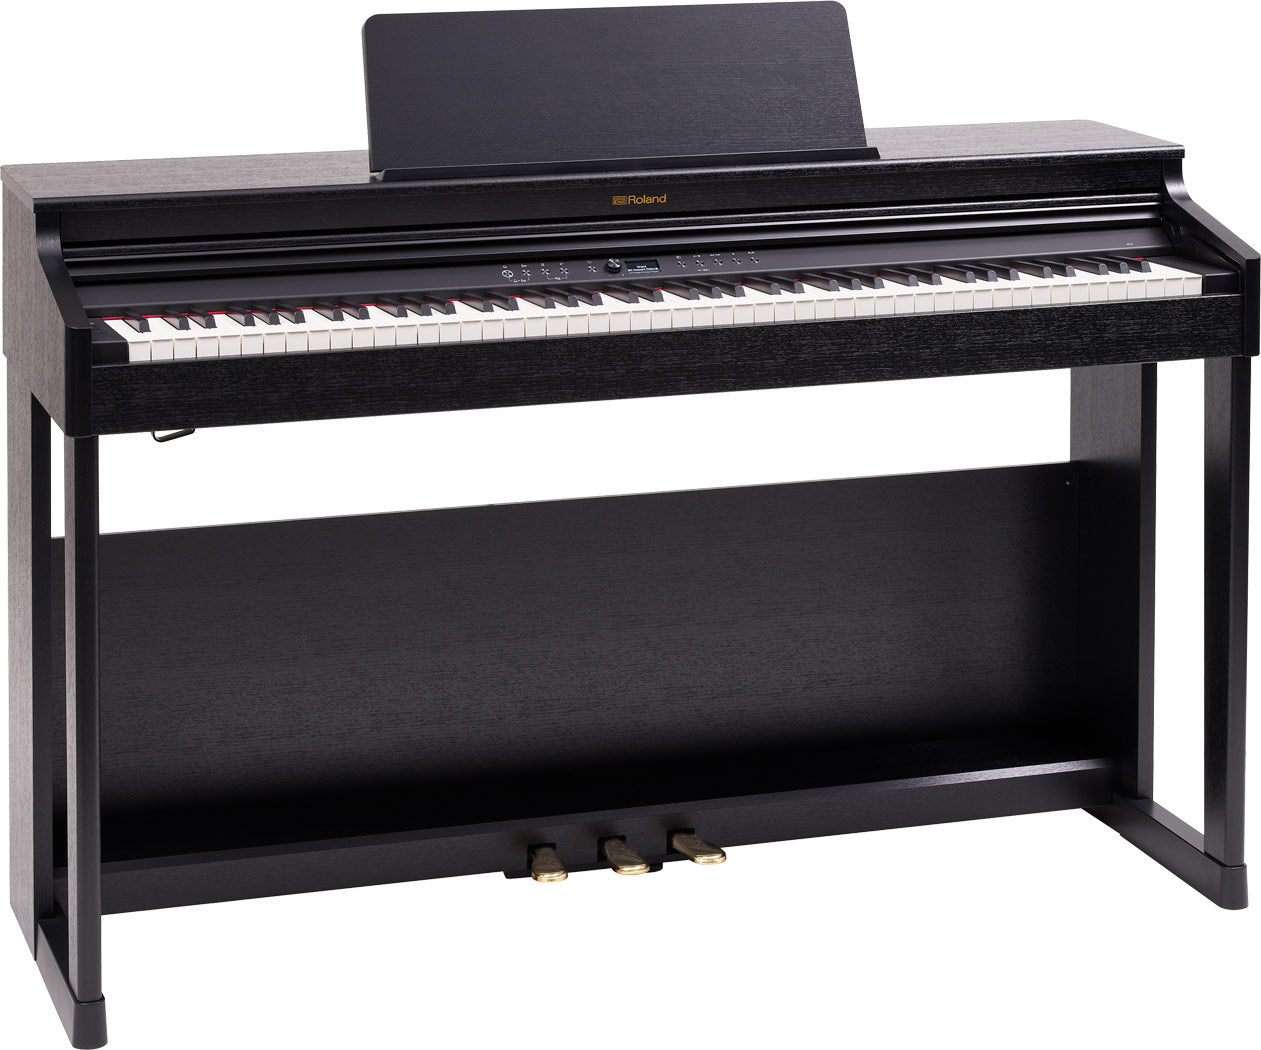 Roland RP-701 Digital Piano - Black